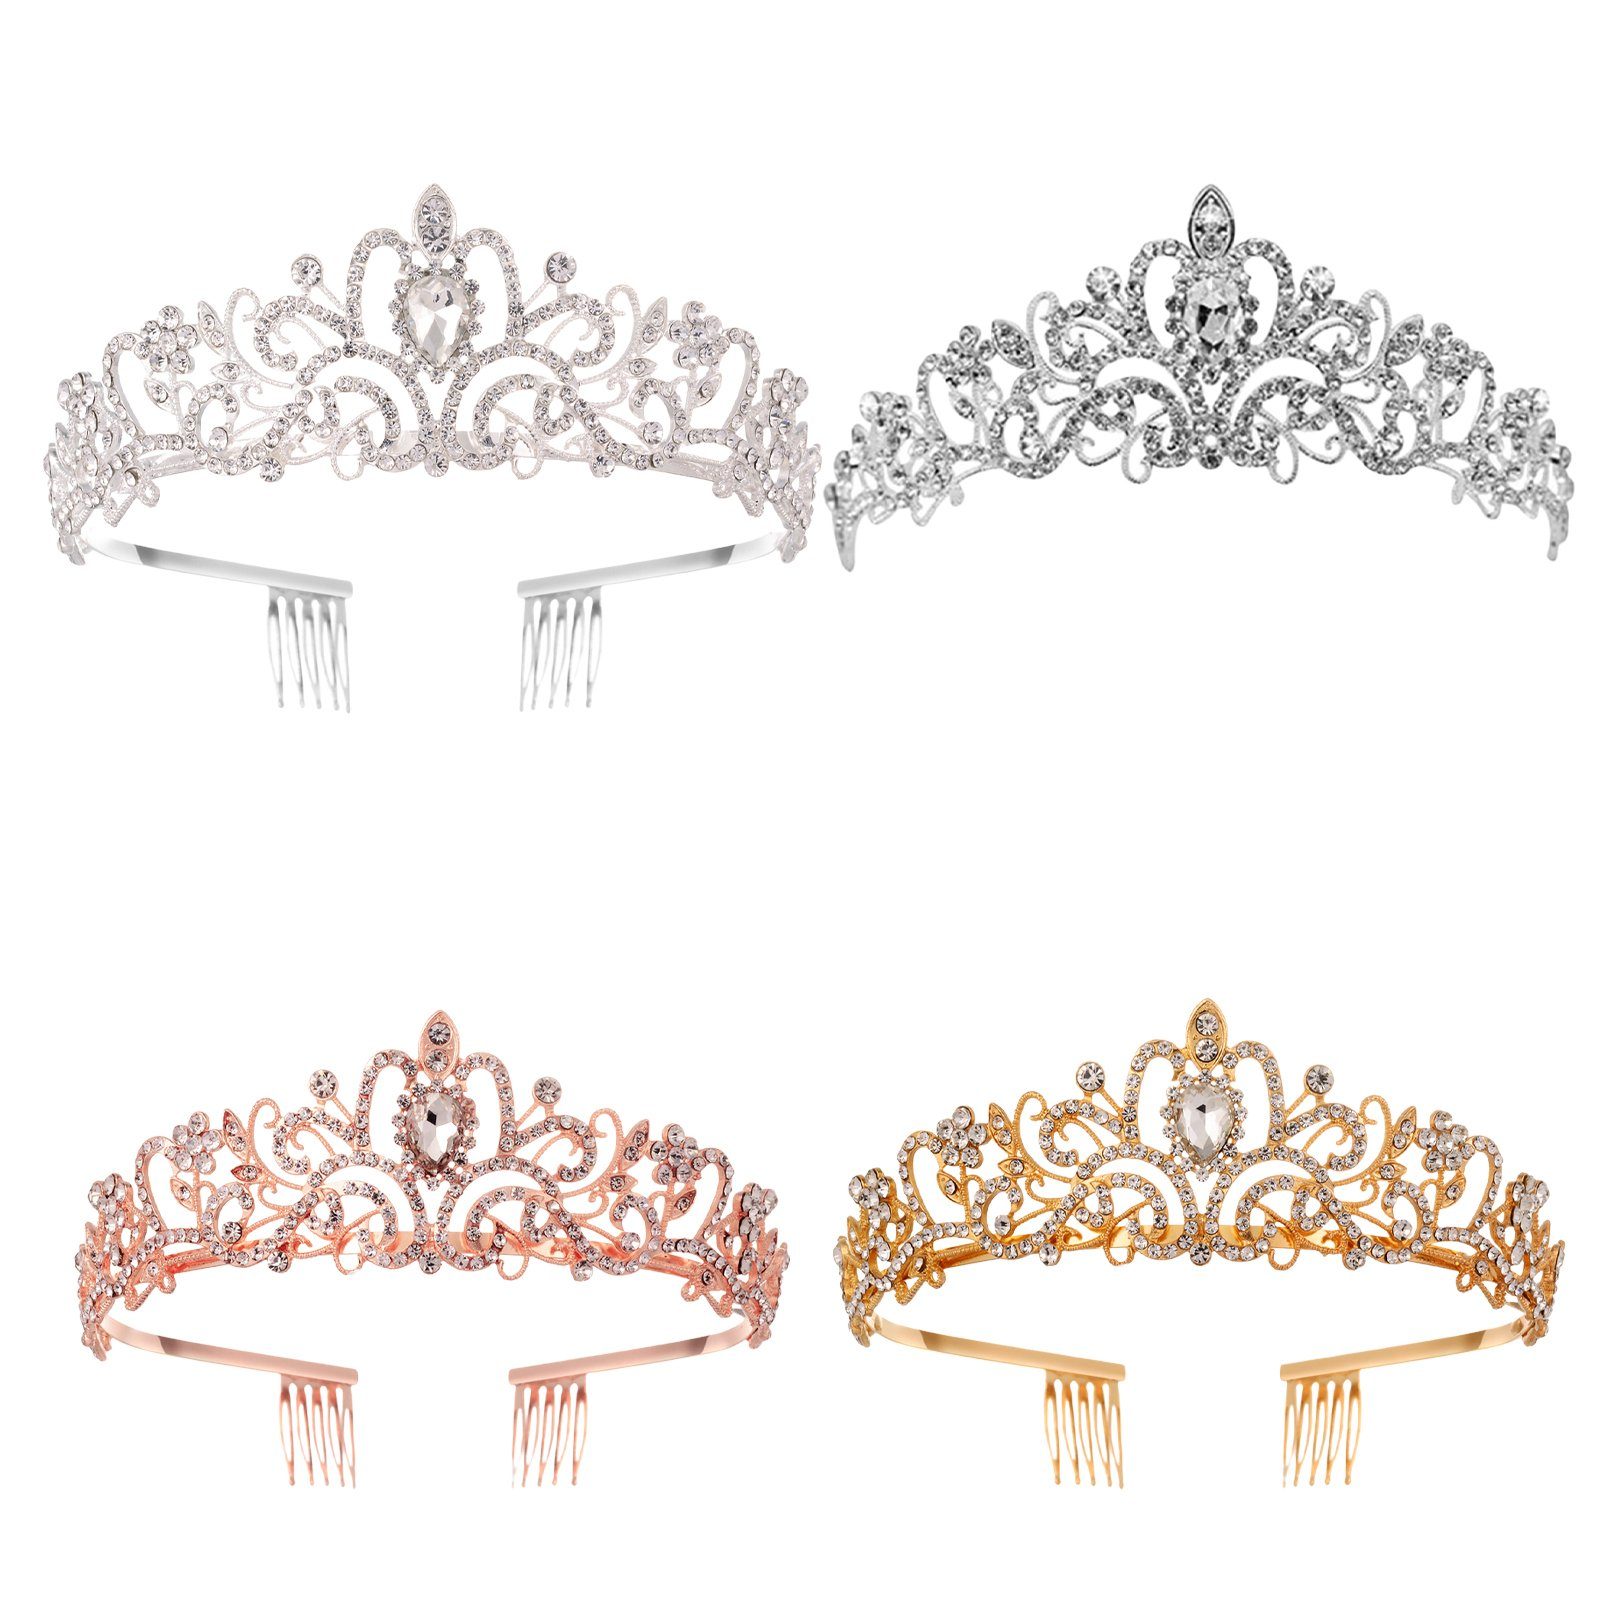 Blusmart Haarband Leichte, Luxuriöse Strass-Kronen-Tiaras Haarband Für Haarschmuck, golden Hochzeit